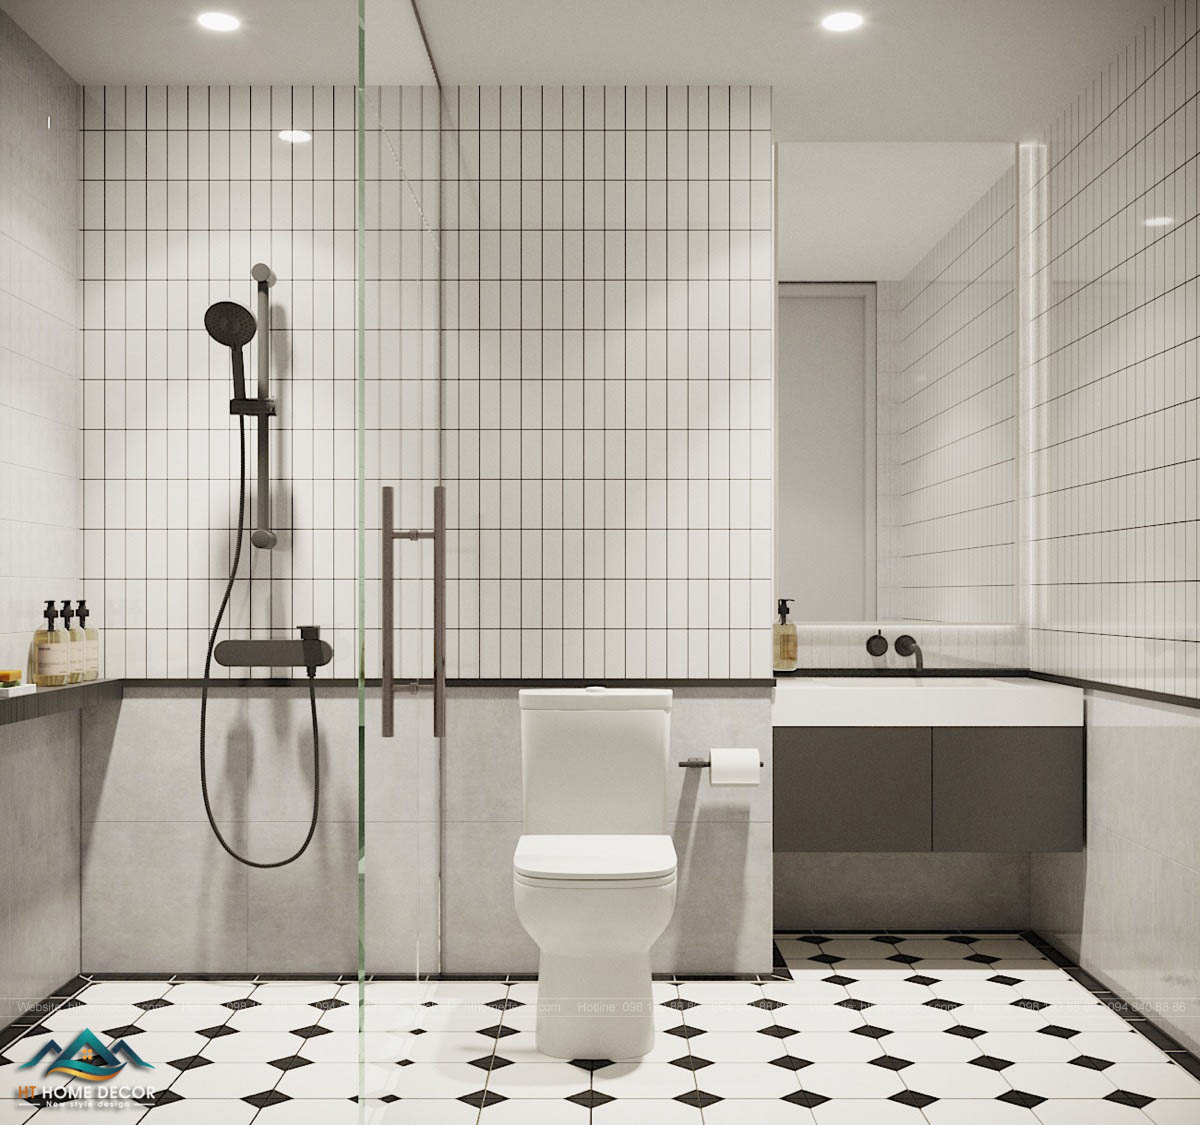 Không gian phòng tắm được thiết kế để tối ưu hóa không gian. Tuy nhỏ thế nhưng không hề chật chội và gây khó chịu